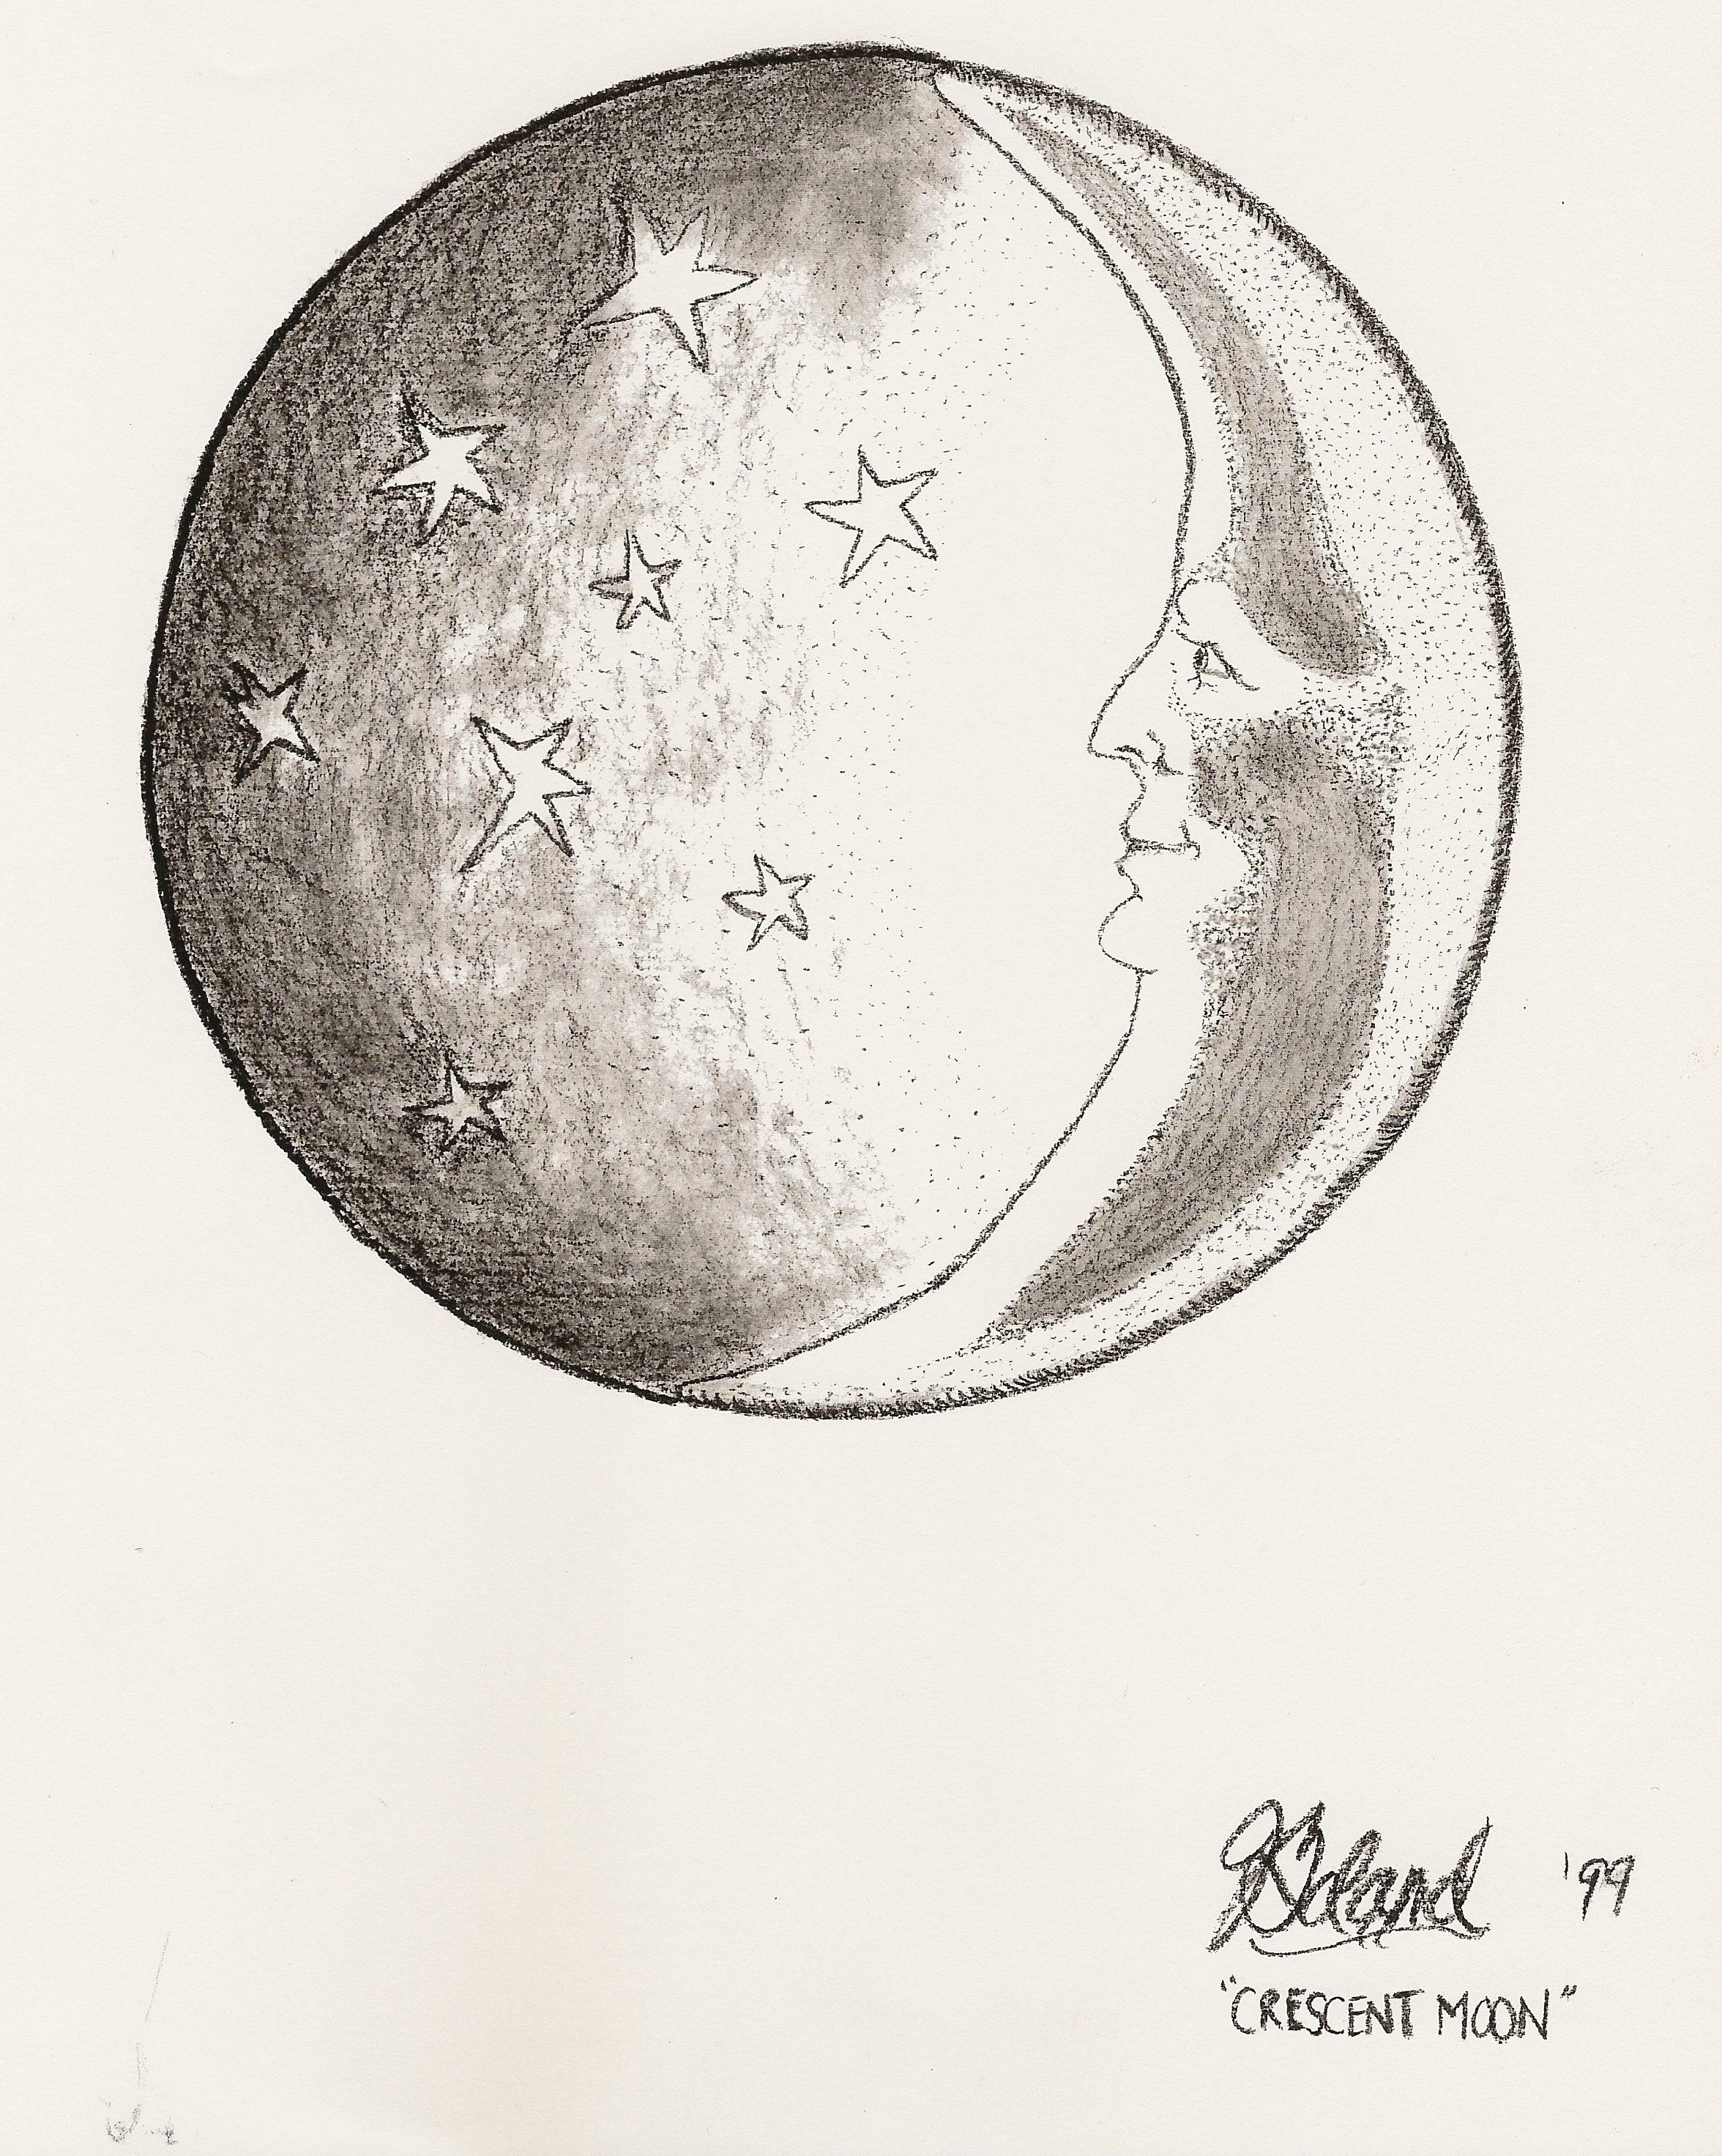 Полный урок рисования луны в одном изображении